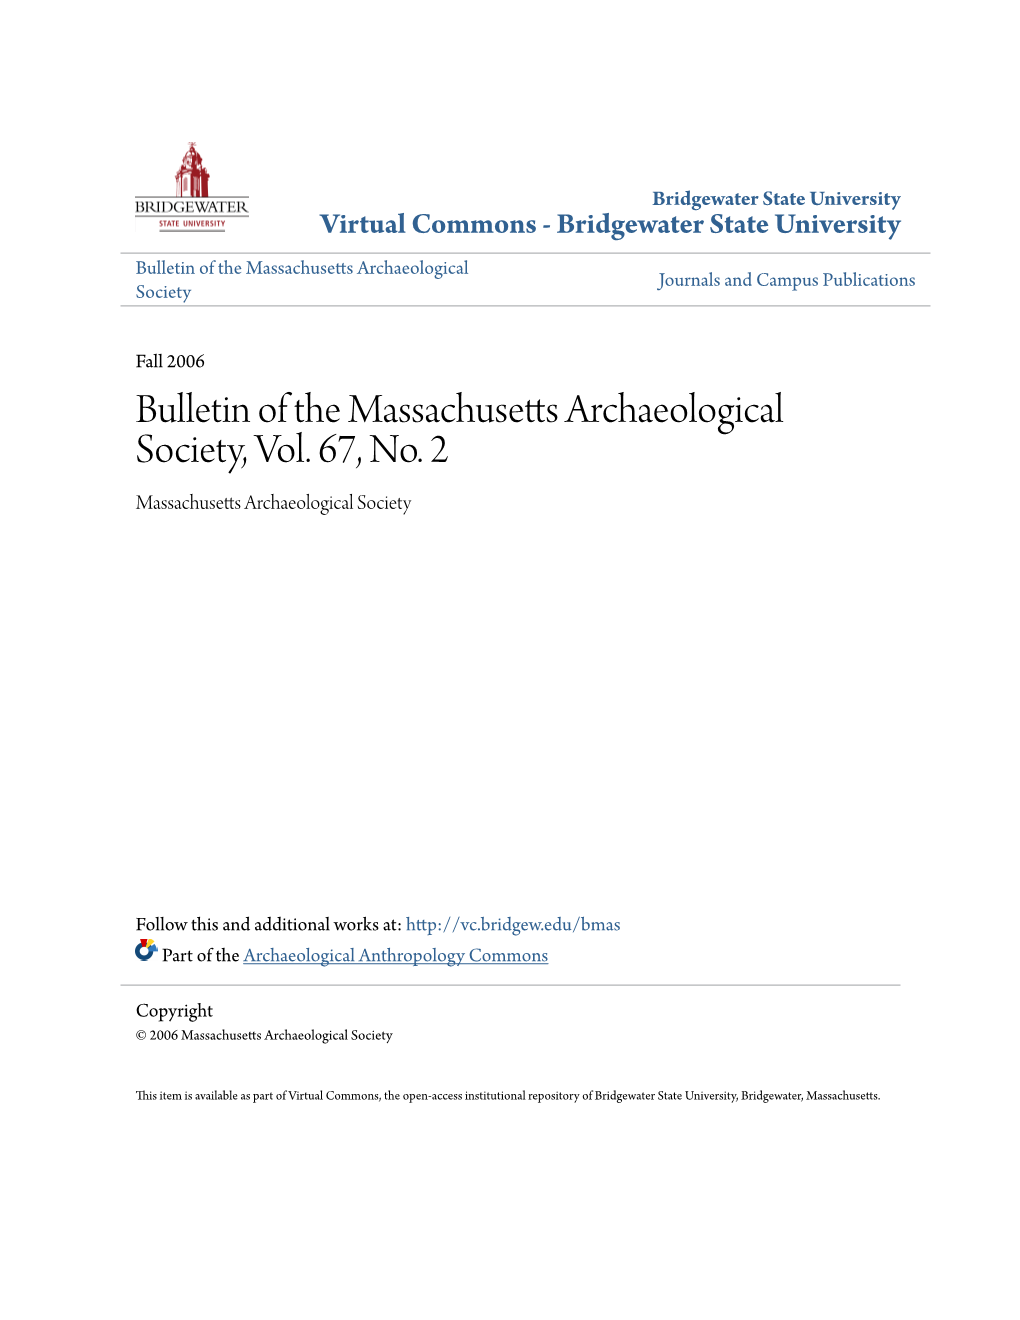 Bulletin of the Massachusetts Archaeological Society, Vol. 67, No. 2 Massachusetts Archaeological Society